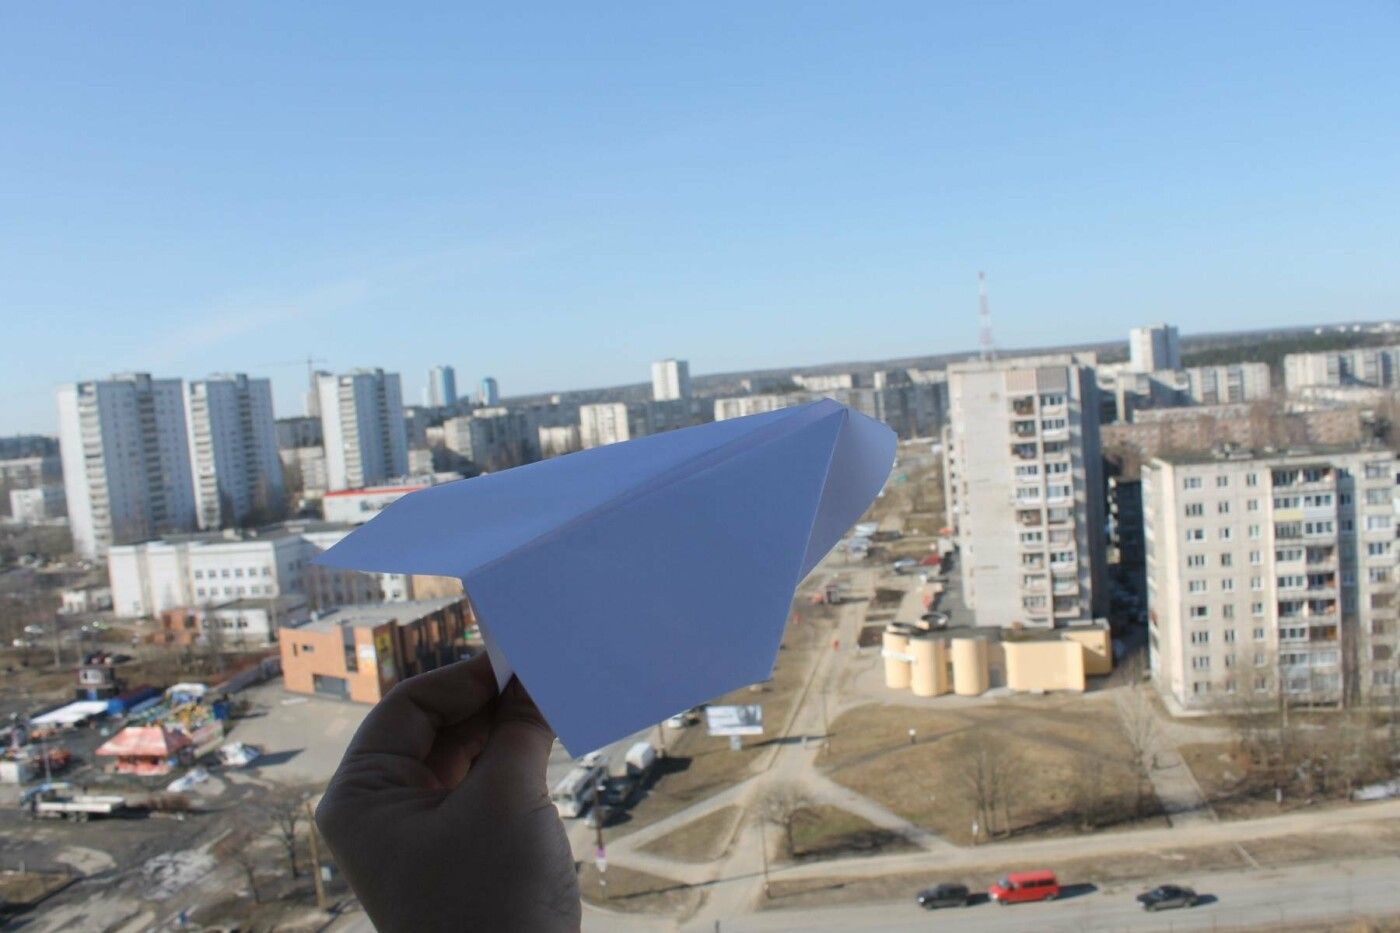 #sundaypaperplane: пользователи запускают бумажные самолетики и делятся видео в соцсетях